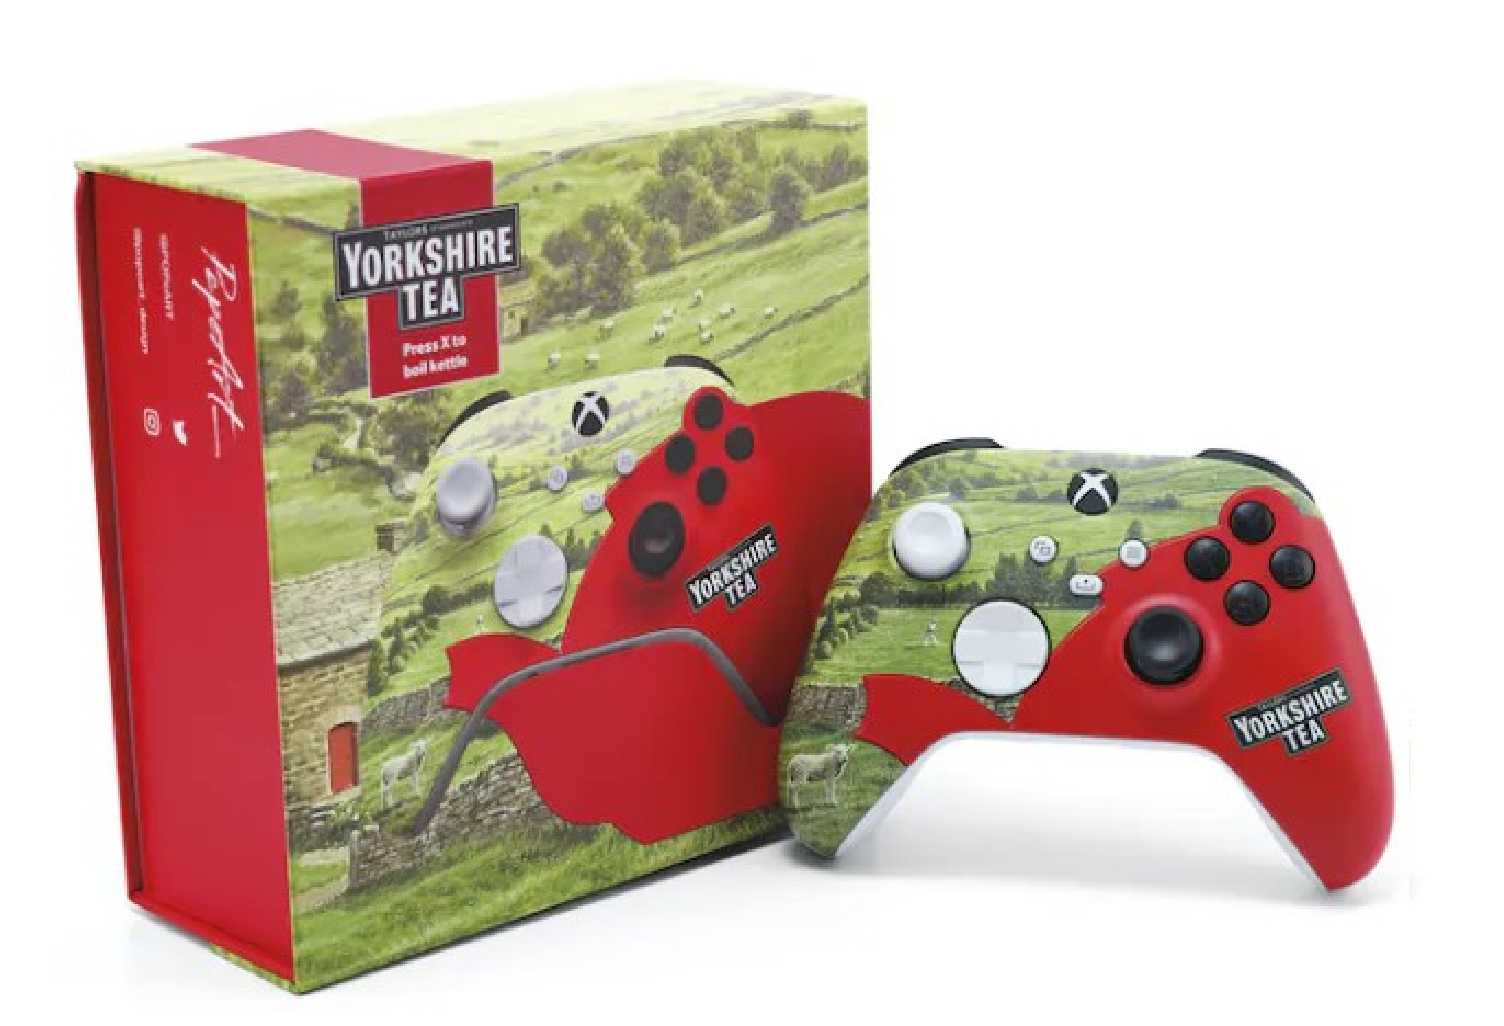 Yorkshire Tea теперь продает фирменные контроллеры Xbox и PS5 по цене 150 фунтов стерлингов, и их дизайн заслуживает внимания.